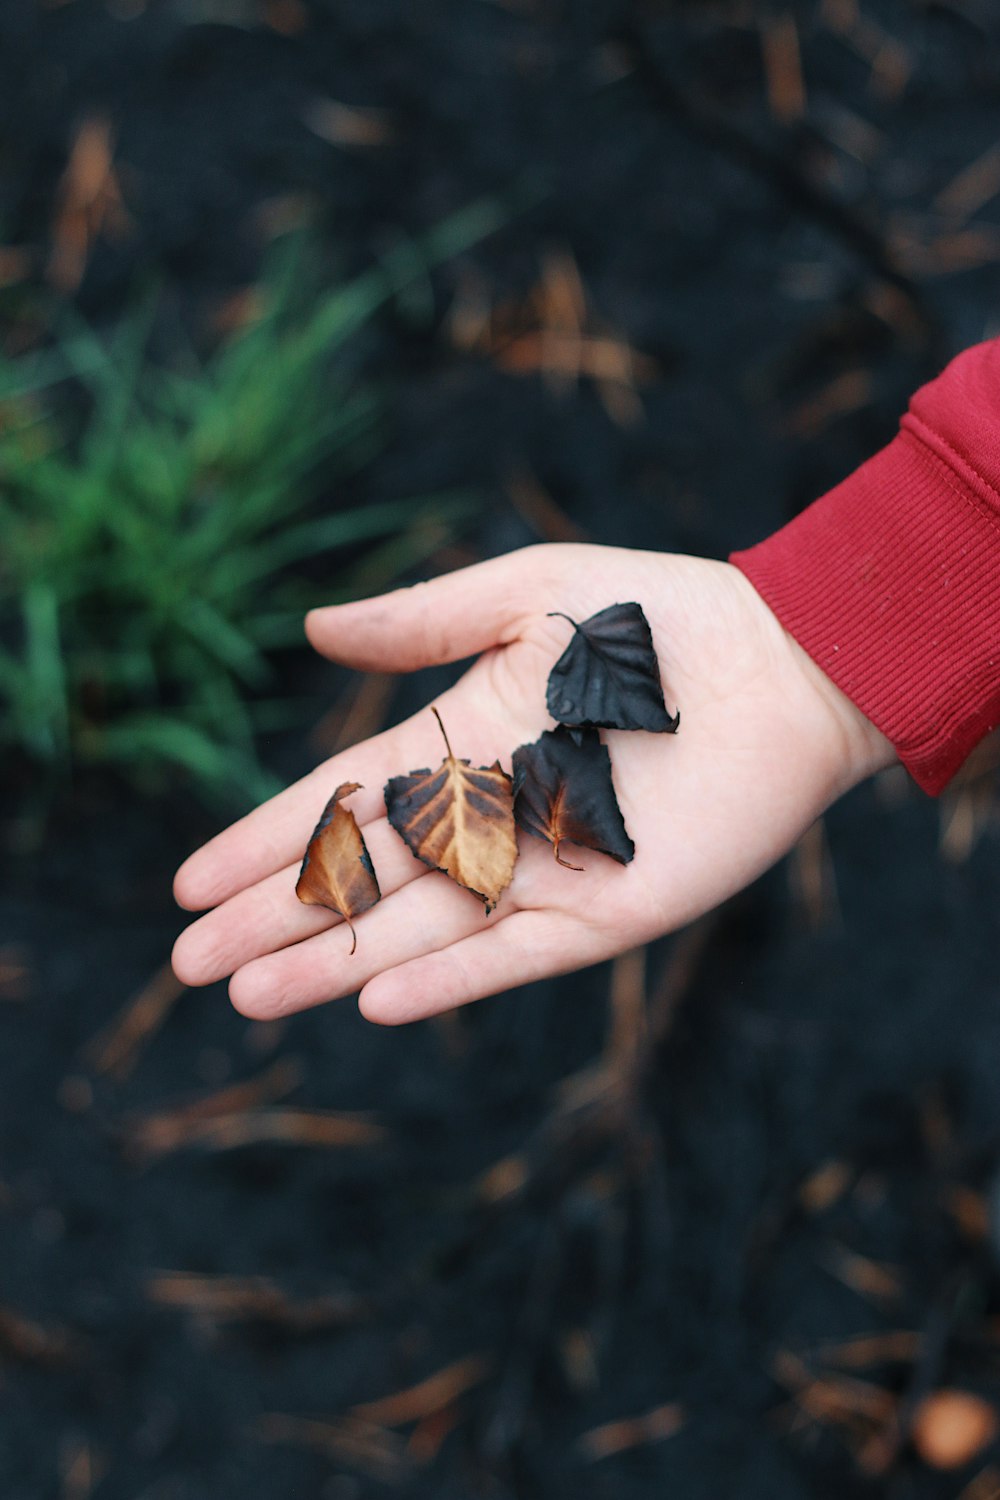 quatre feuilles brunes et noires dans la paume de la main de la personne